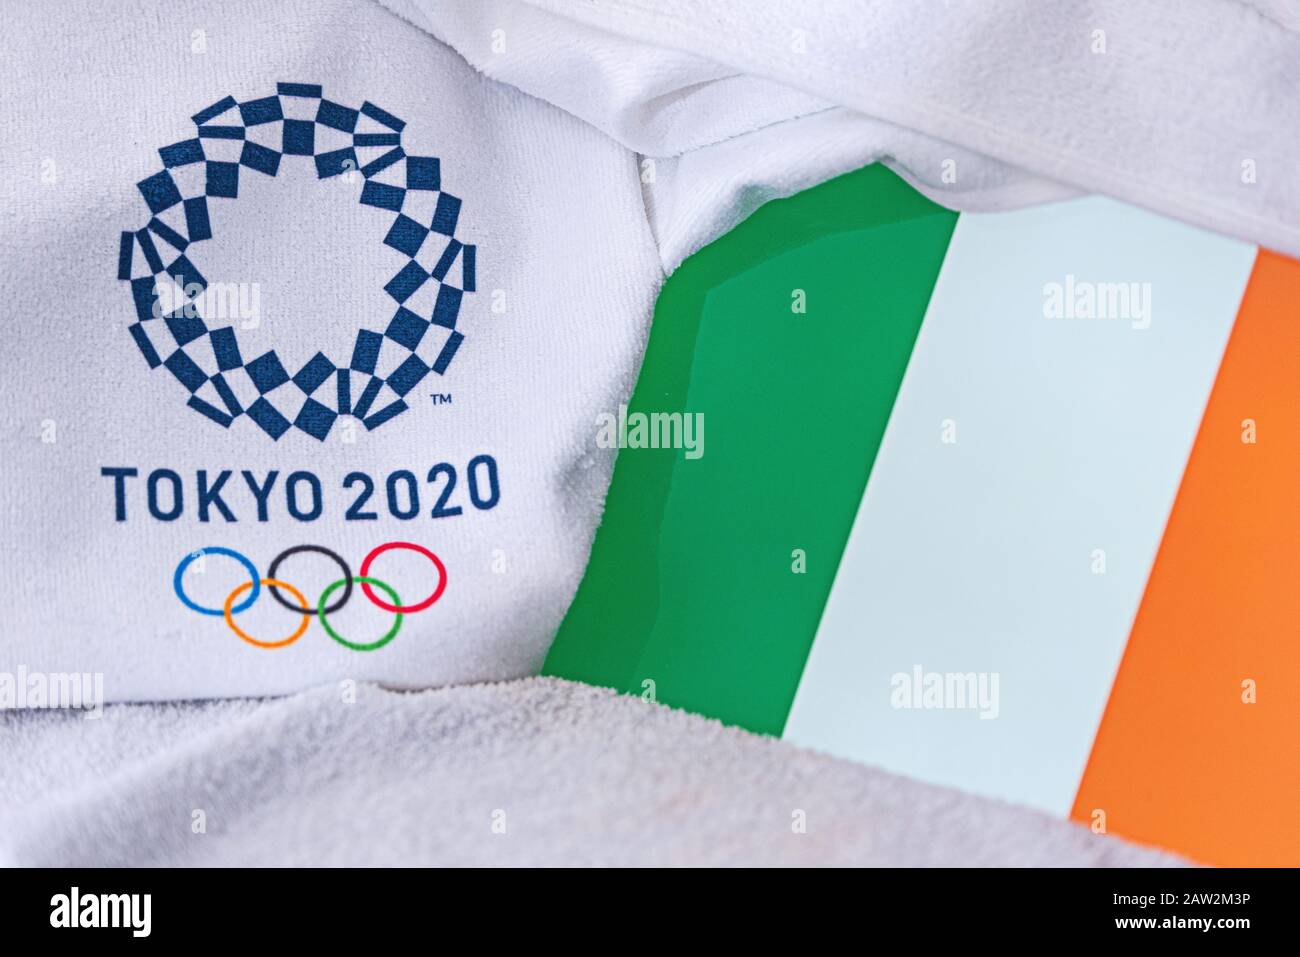 TOKIO, JAPAN, FEBRUAR. 4, 2020: Nationalflaggen Irlands, offizielles Logo der Olympischen Sommerspiele in Tokio 2020. Weißer Hintergrund Stockfoto